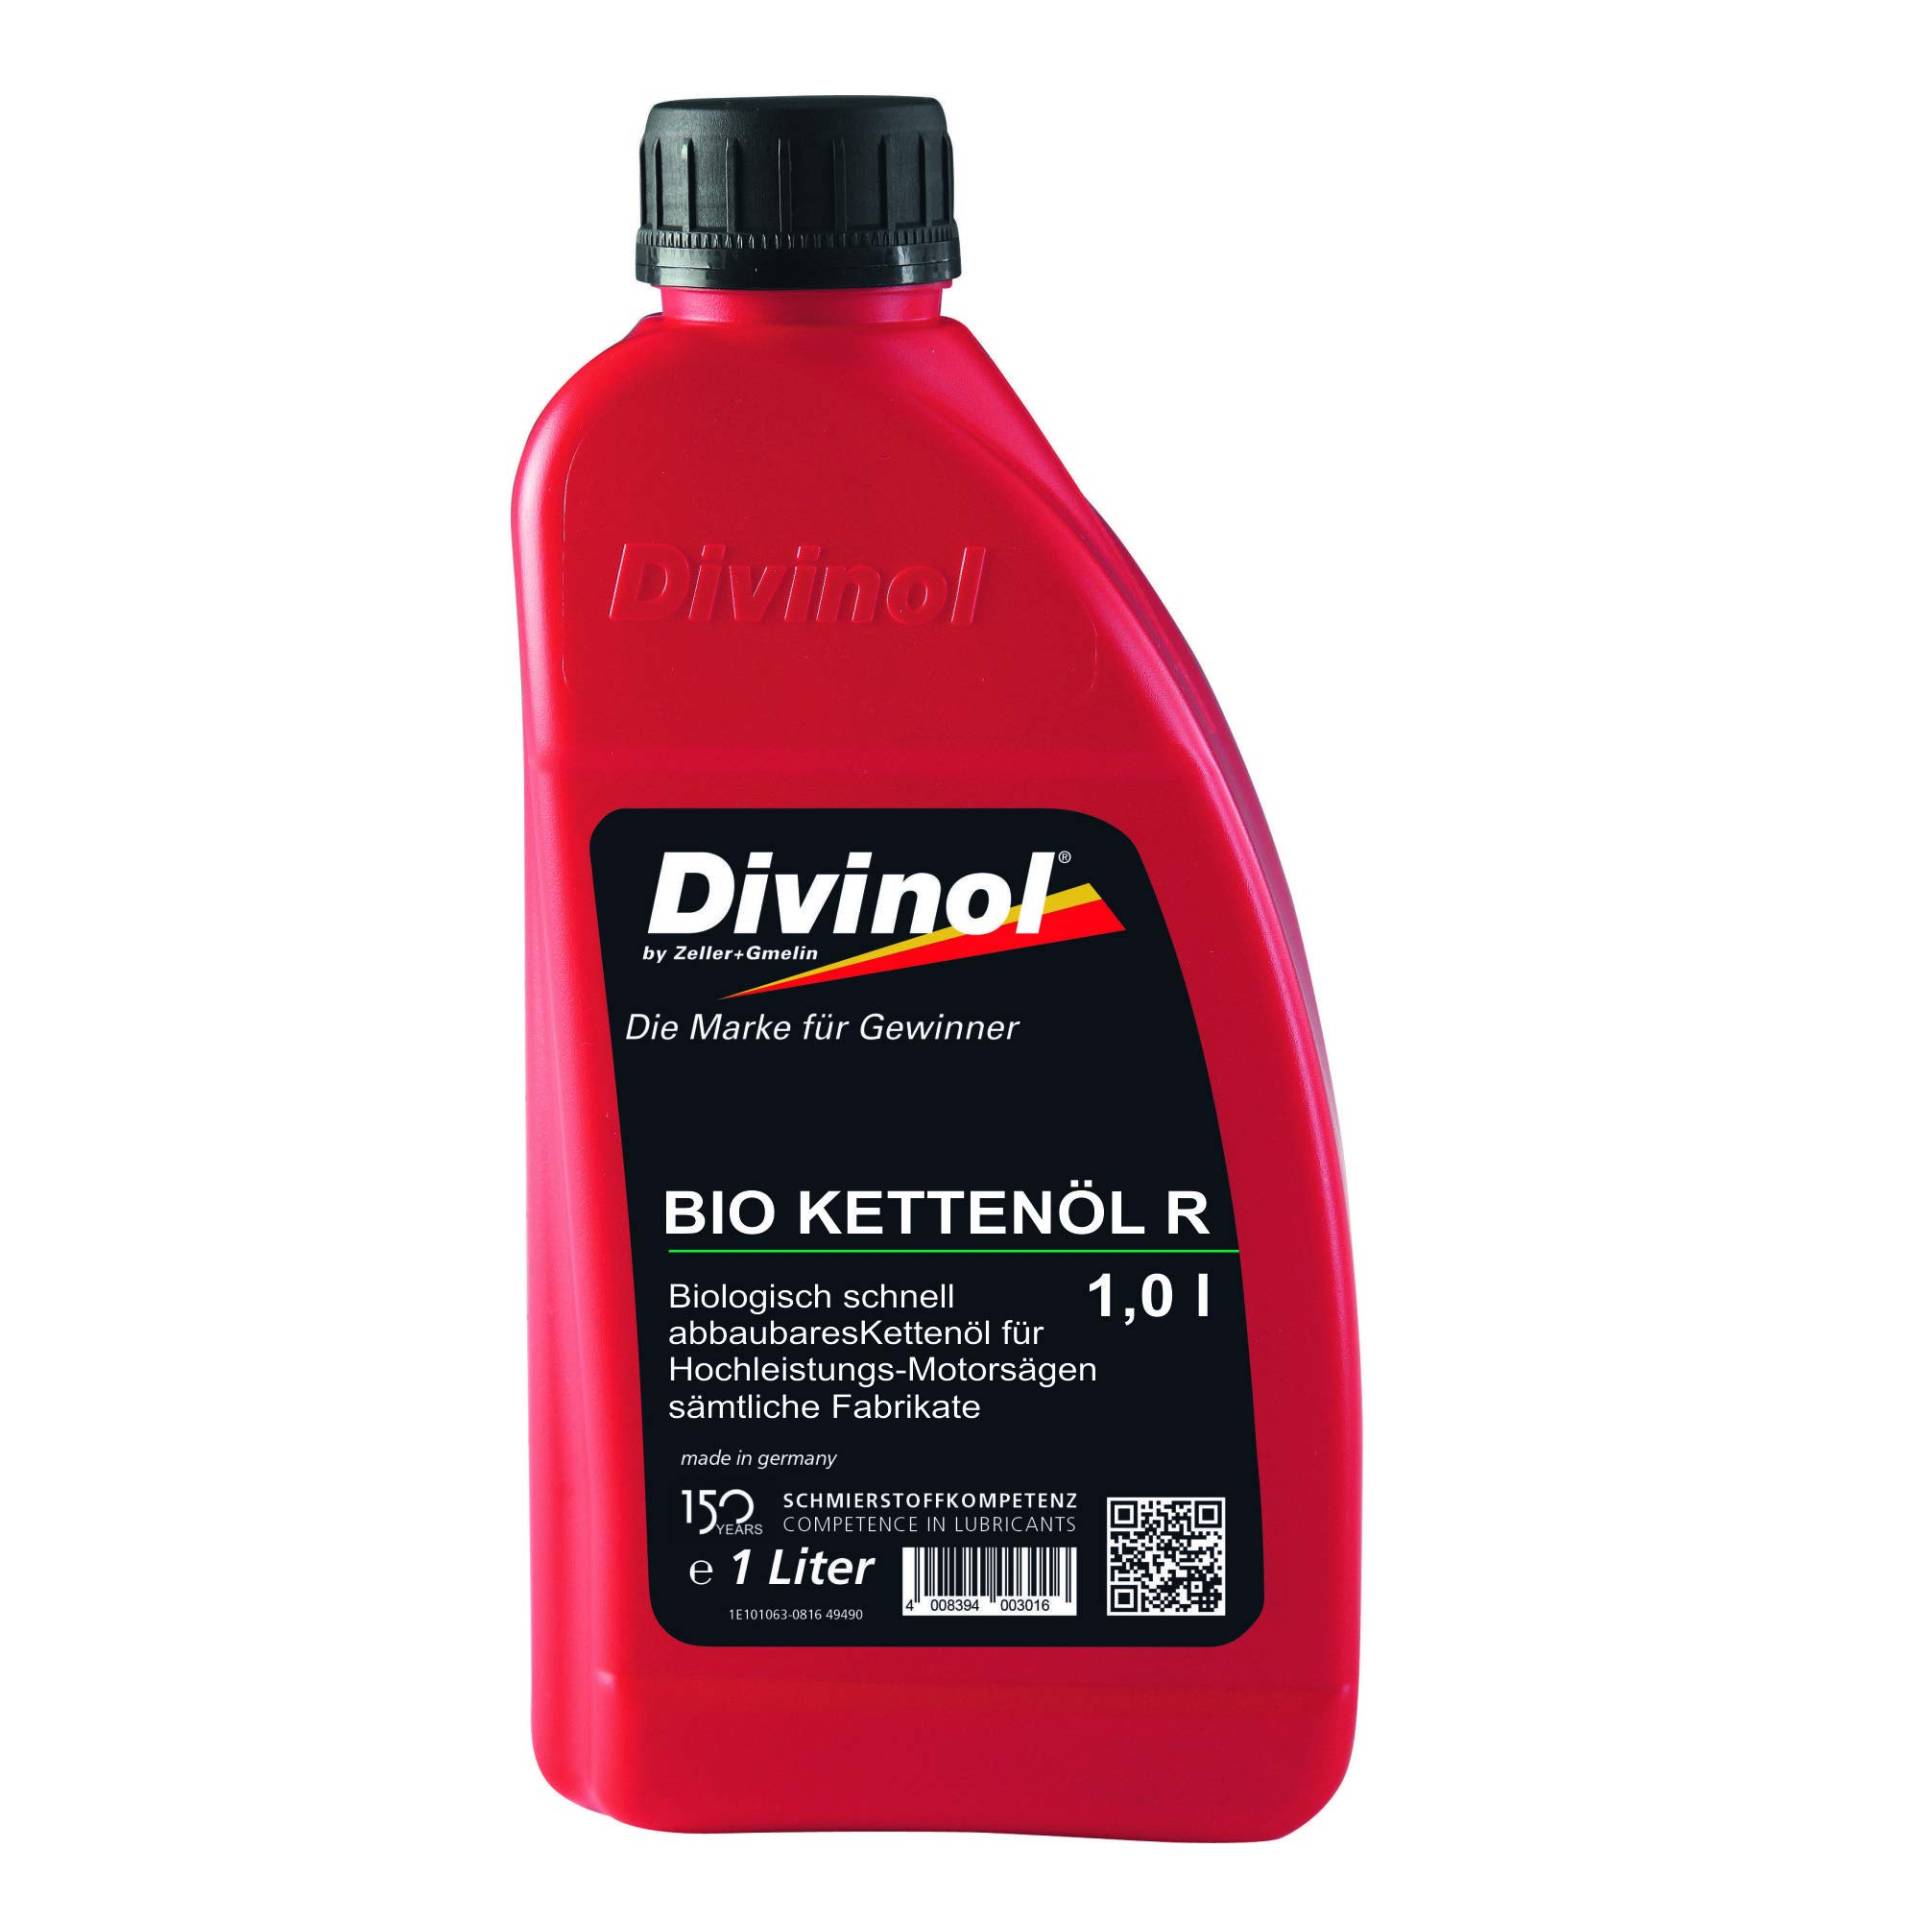 Bio-Sägekettenöl R 'Divinol' / 1,0 l Kanister von bauCompany24